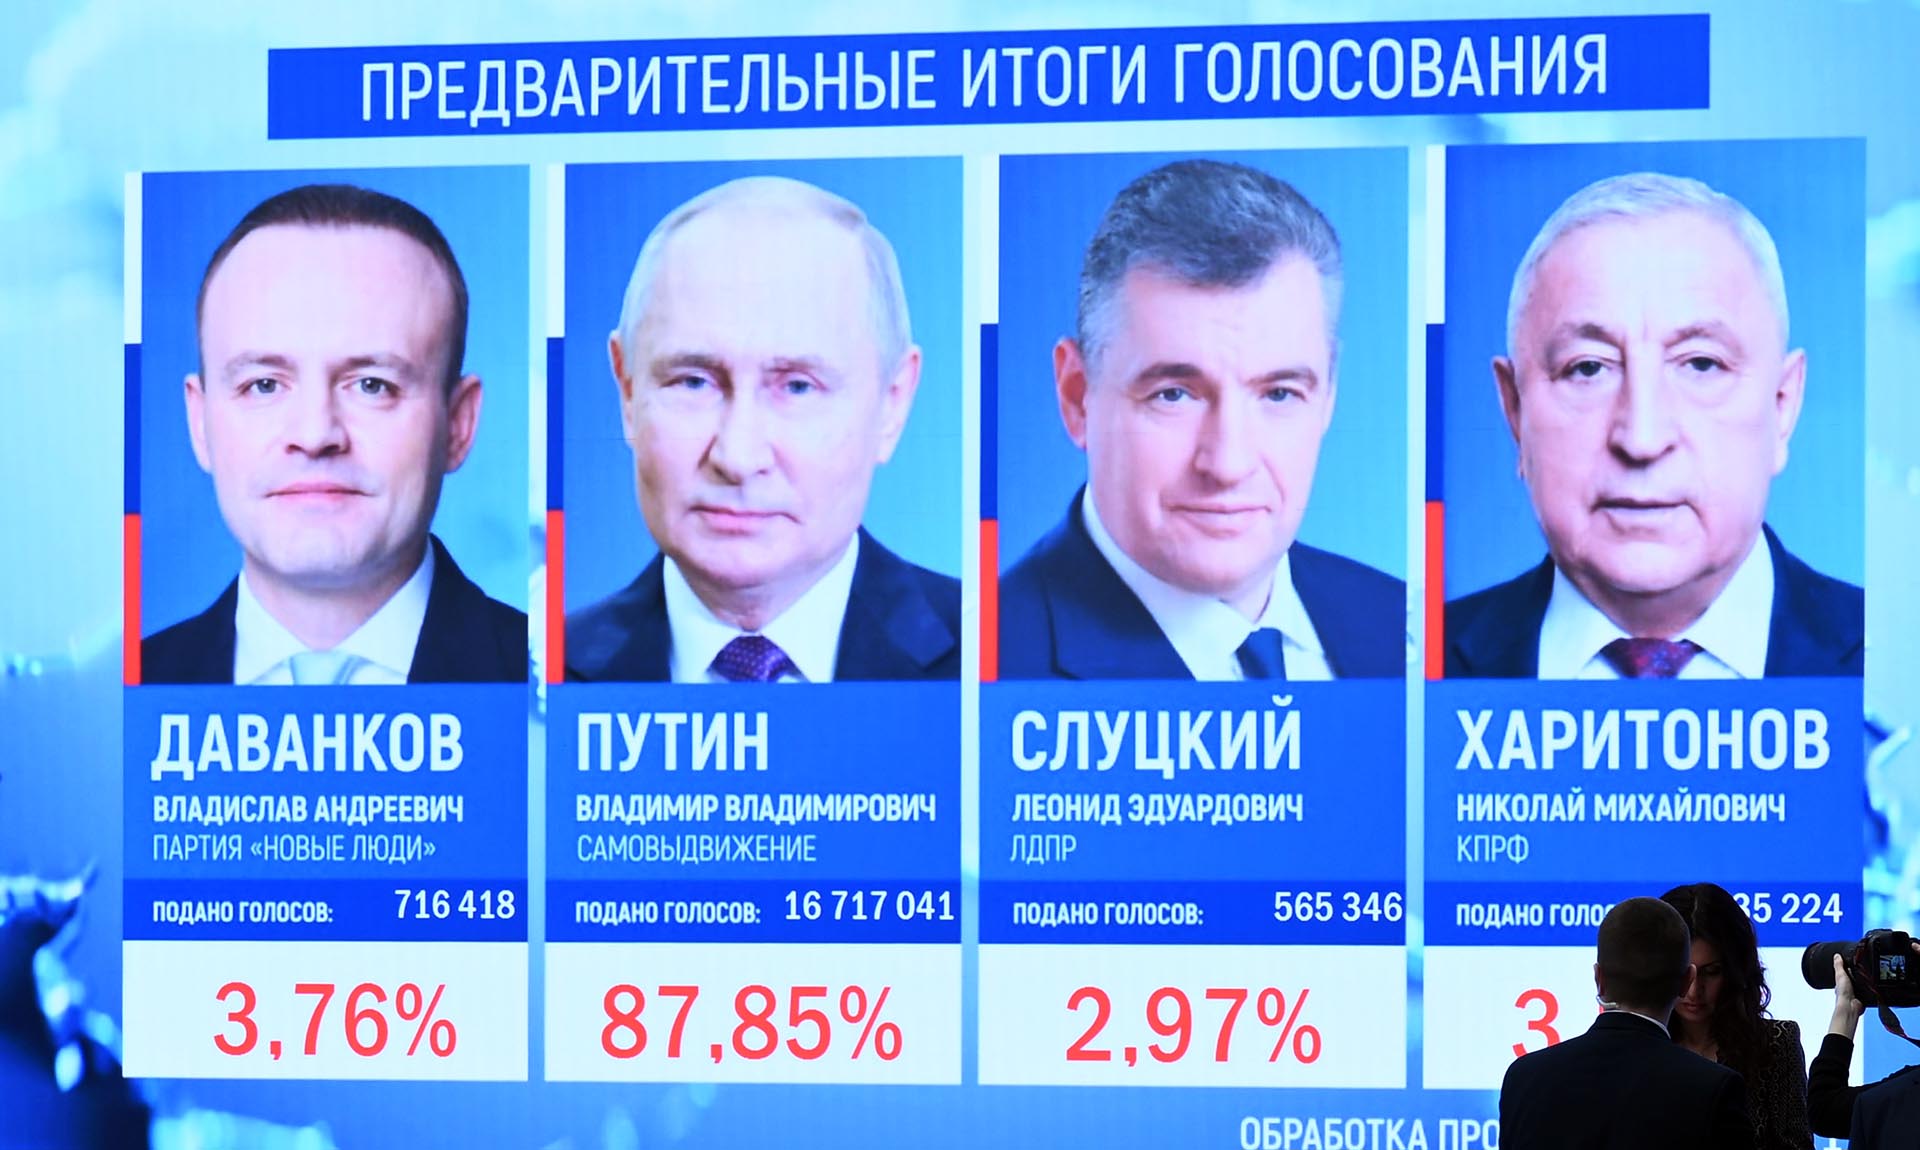 Предварительные итоги голосования на выборах президента РФ